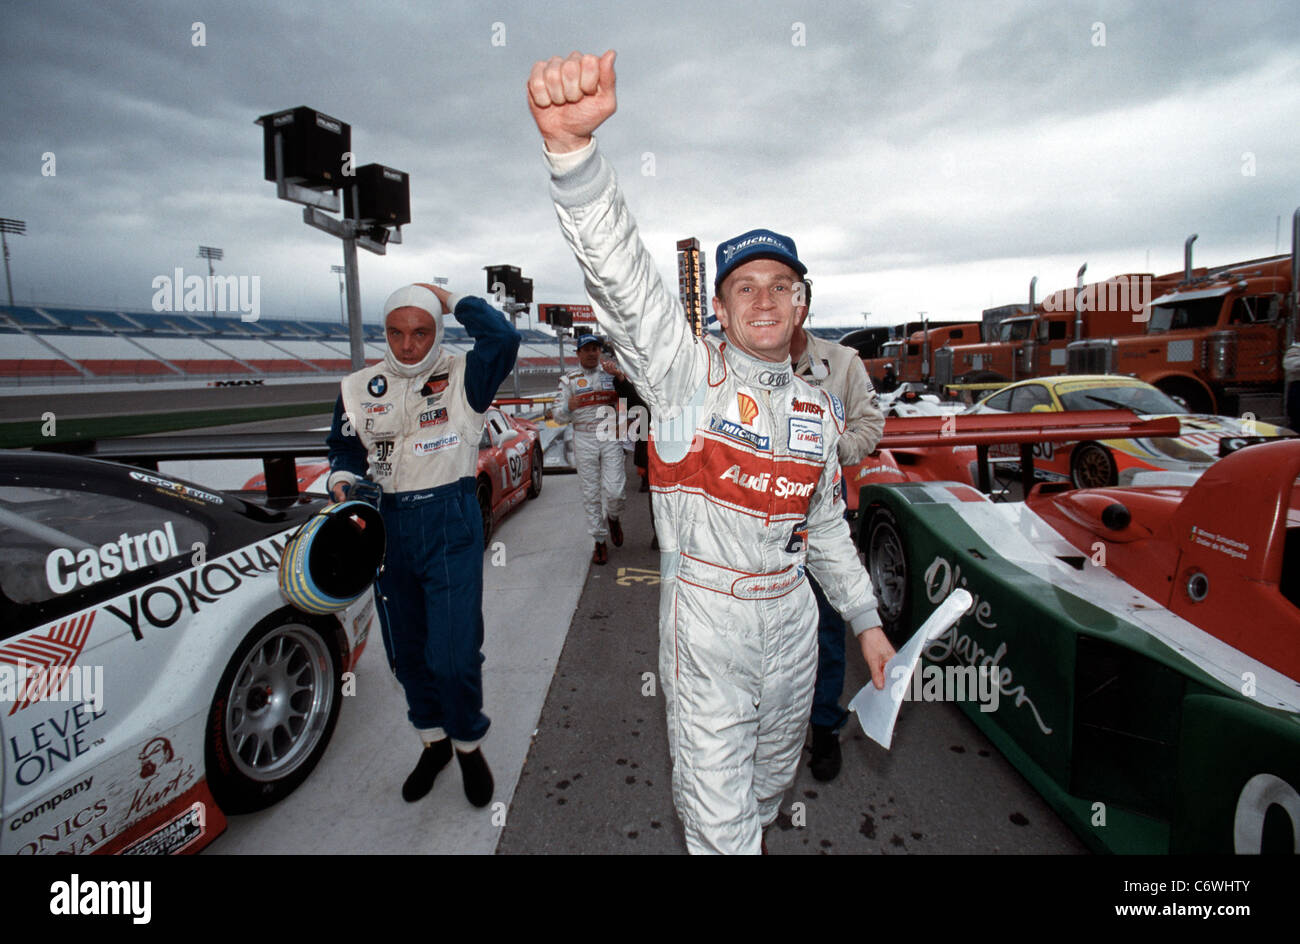 Scottish-Fahrer Allan McNish bei Las Vegas Motor Speedway, wo er das Rennen für Audi in der American Le Mans Series gewonnen. Stockfoto